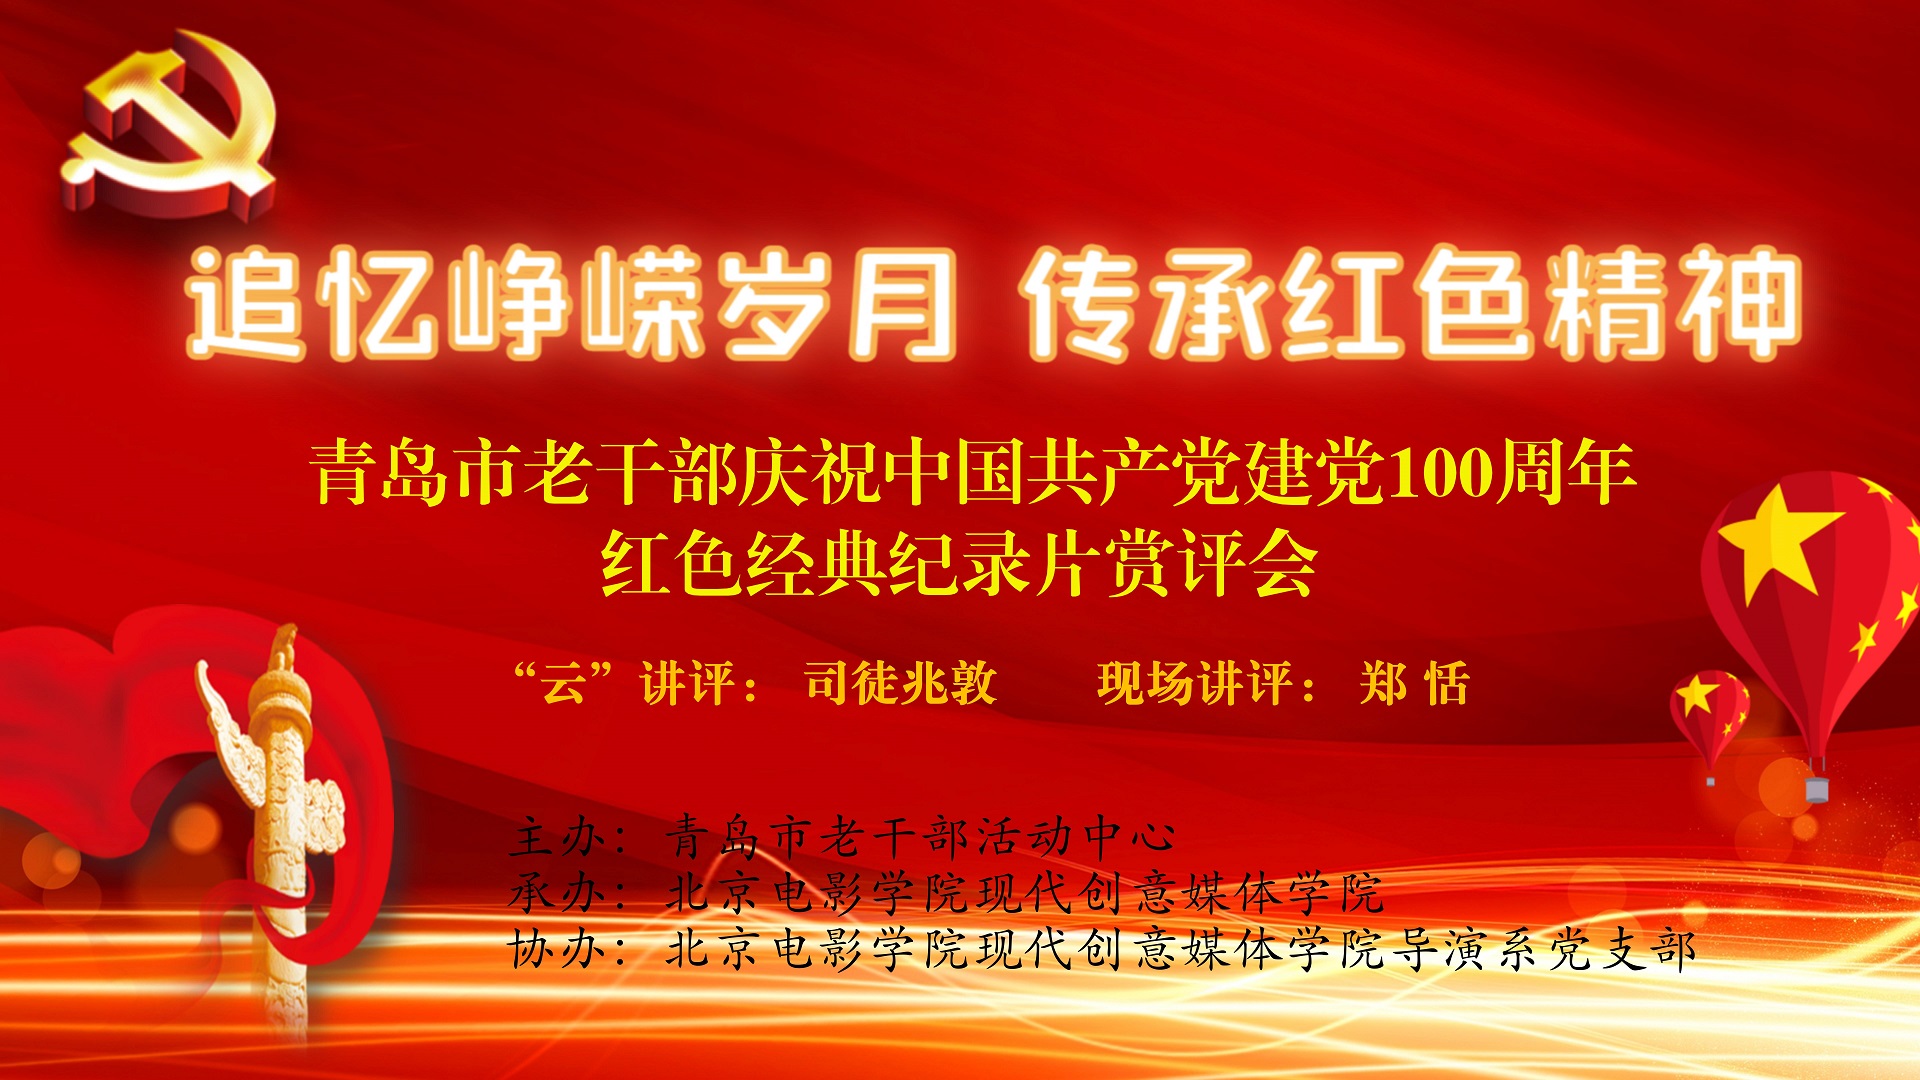 青岛市老干部活动中心举办庆祝中国共产党建党100周年